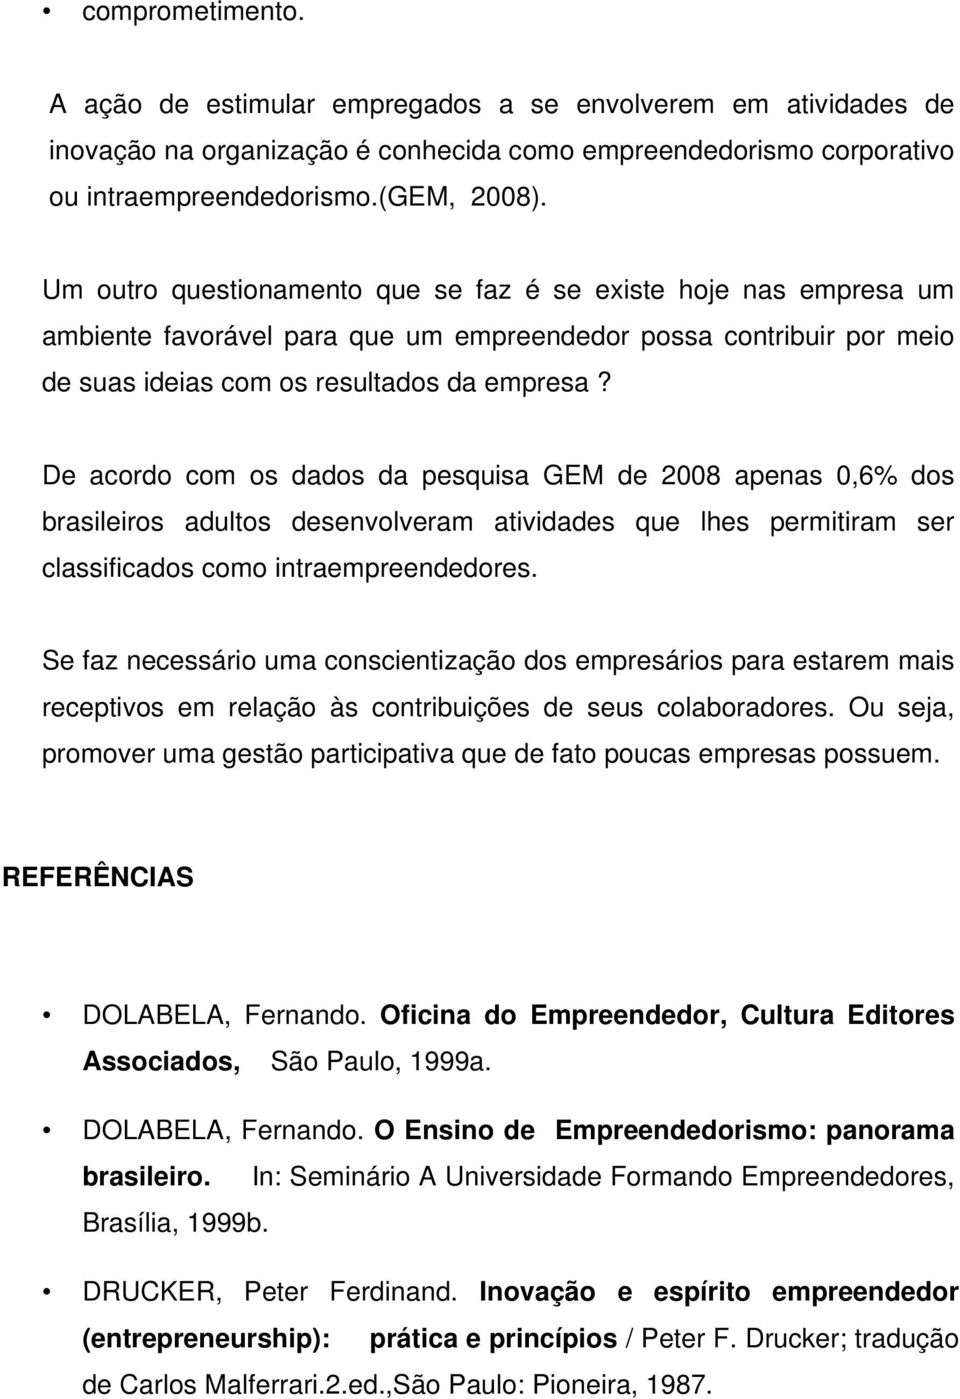 De acordo com os dados da pesquisa GEM de 2008 apenas 0,6% dos brasileiros adultos desenvolveram atividades que lhes permitiram ser classificados como intraempreendedores.